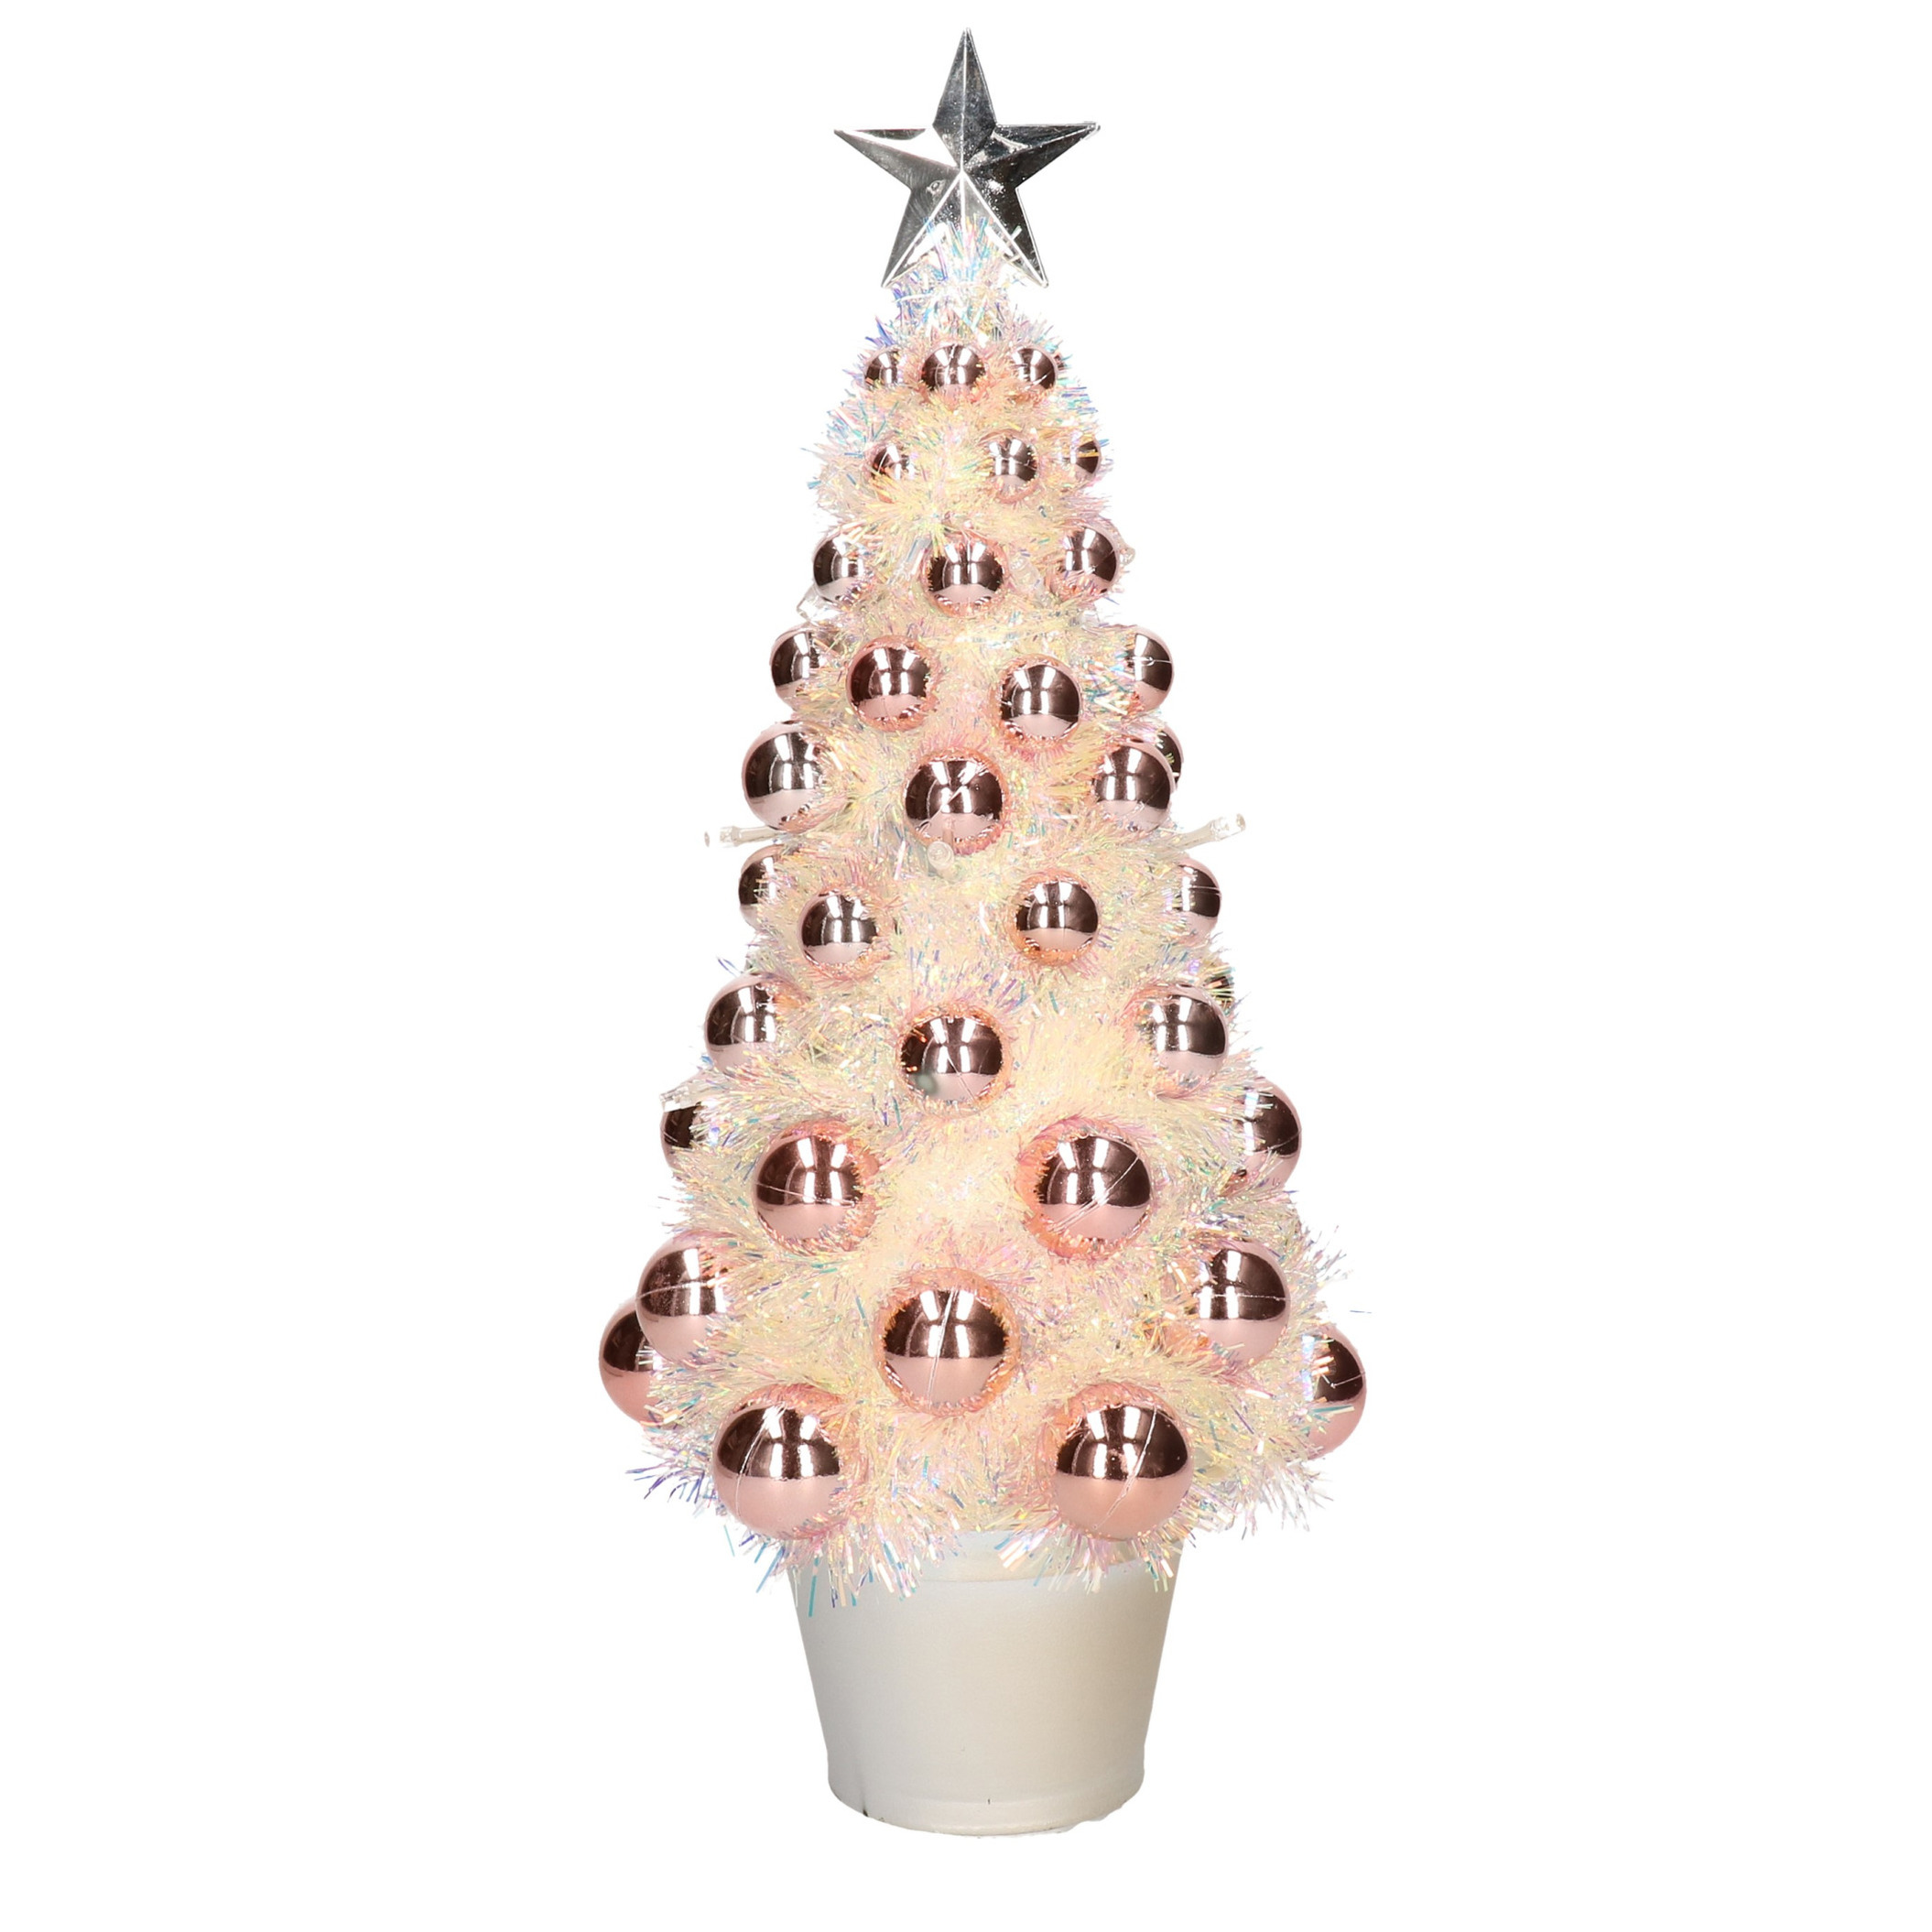 Complete mini kunst kerstboom-kunstboom zalmroze met lichtjes 40 cm